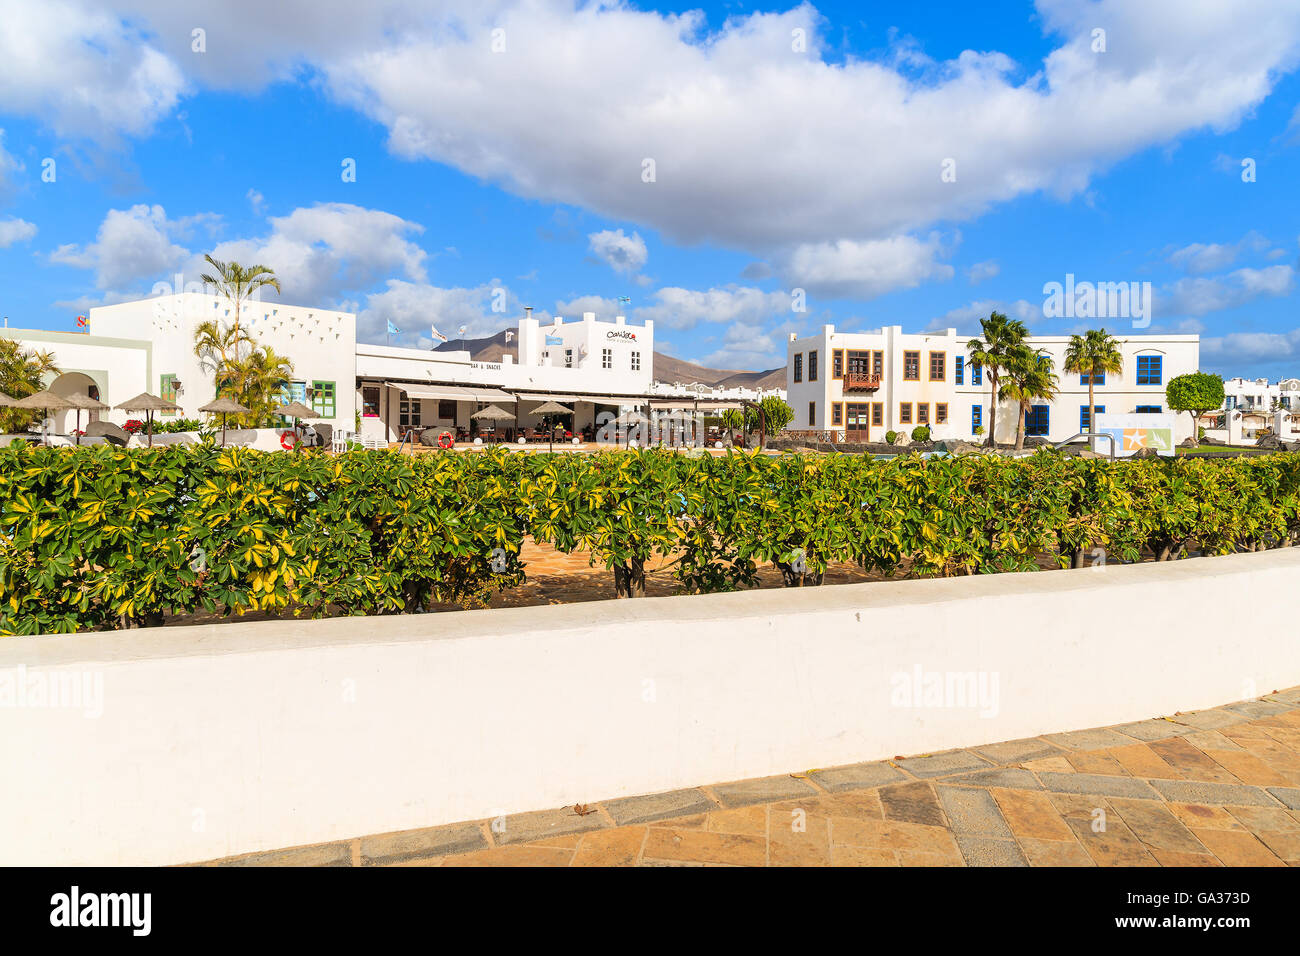 PLAYA BLANCA, Lanzarote Island - Jan 17, 2015: complesso di appartamenti di lusso costruito nel tradizionale stile delle Canarie a Lanzarote Island. Le isole Canarie sono meta di vacanze. Foto Stock